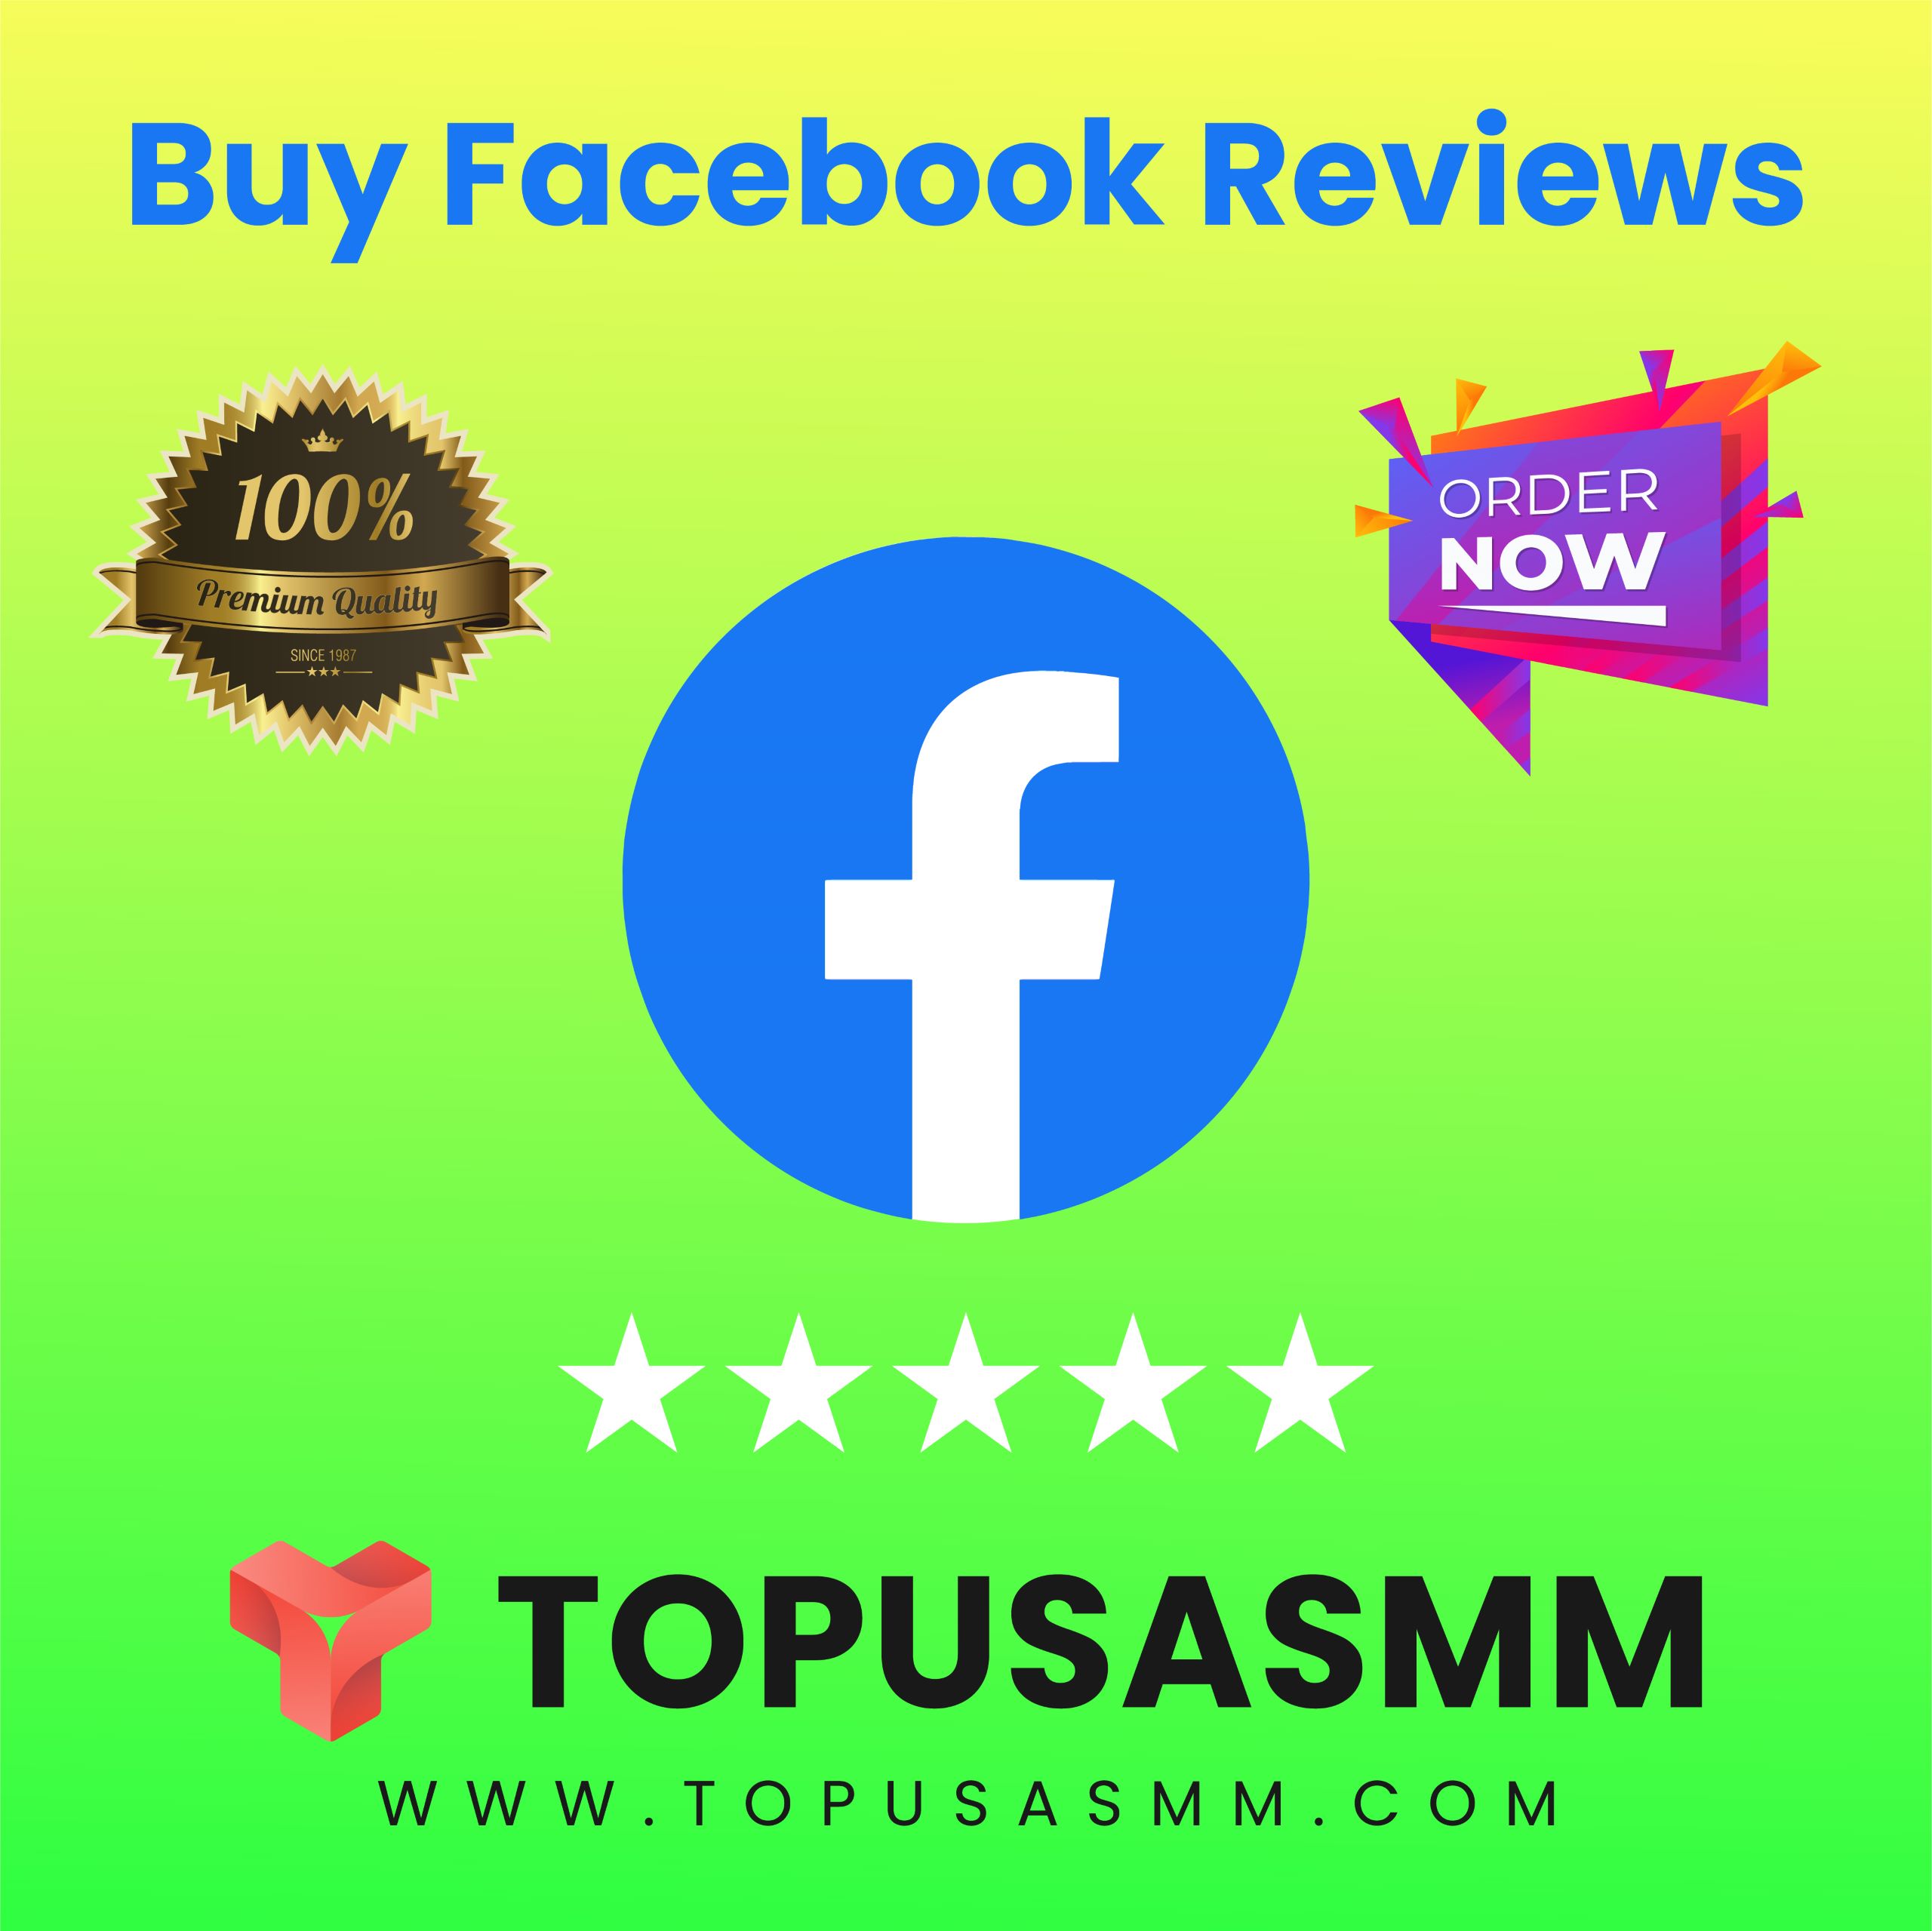 Buy Facebook Reviews - TopUsaSMM